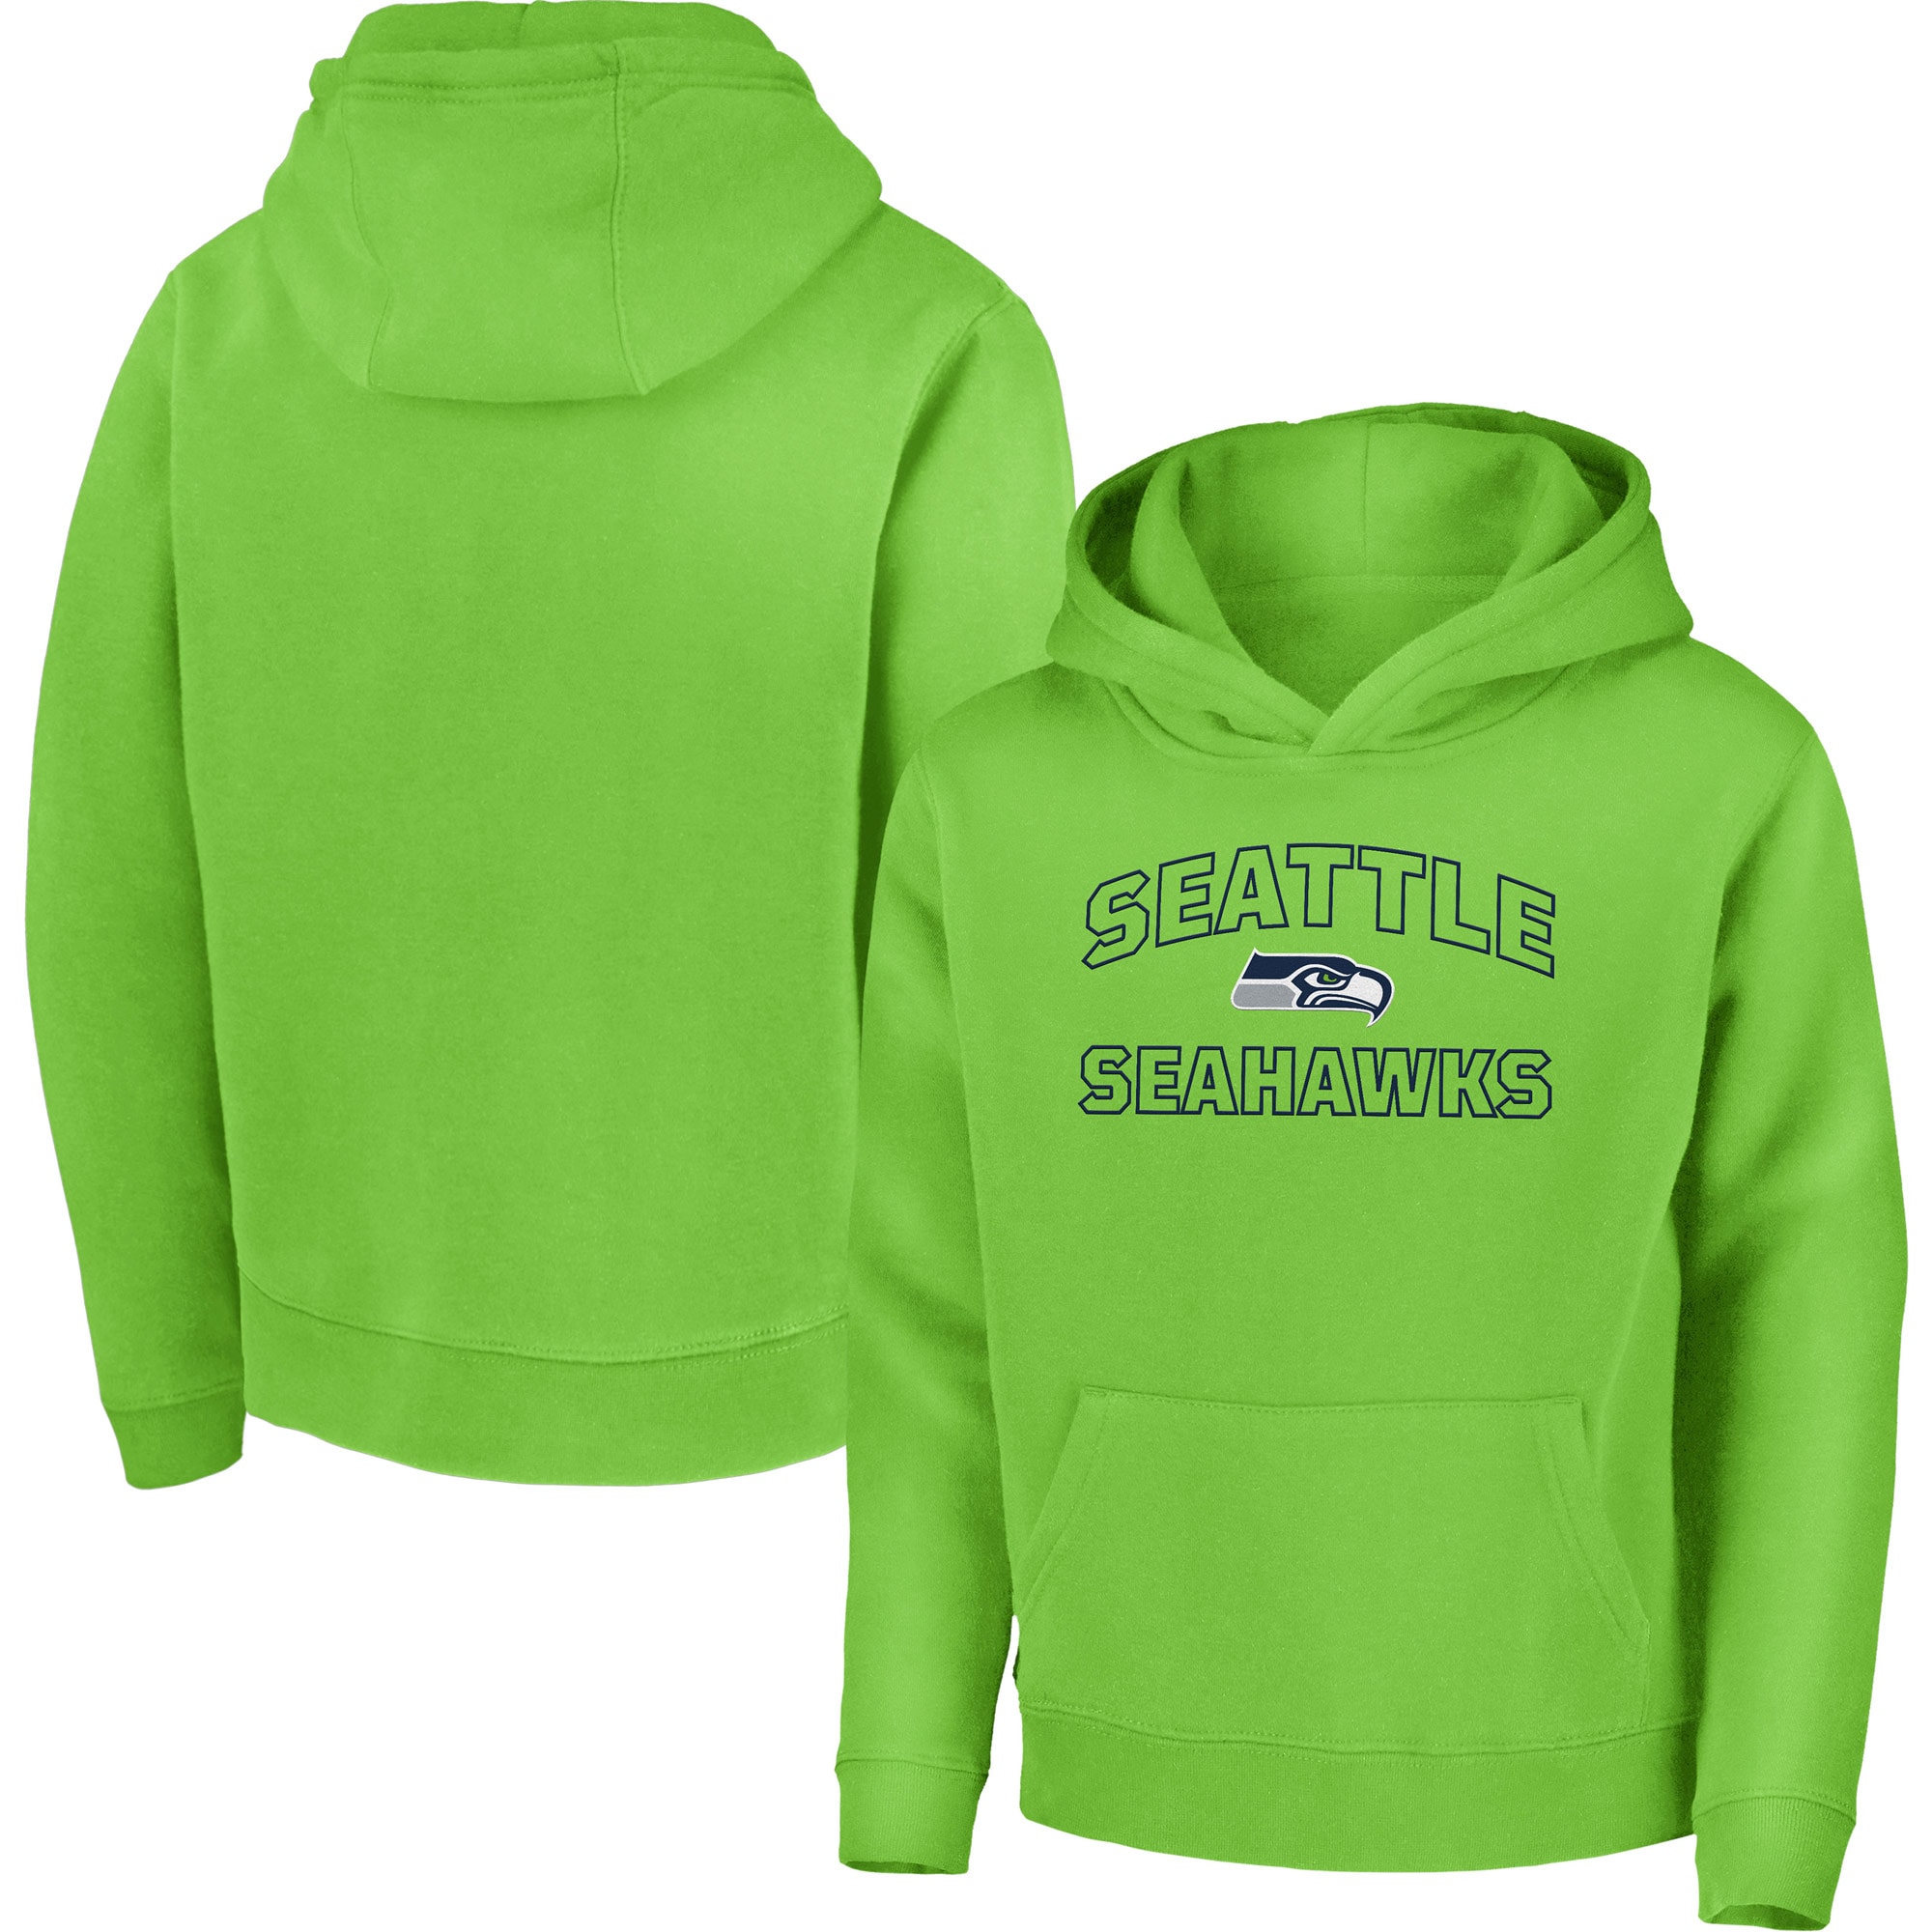 seattle seahawks lime green sweatshirt